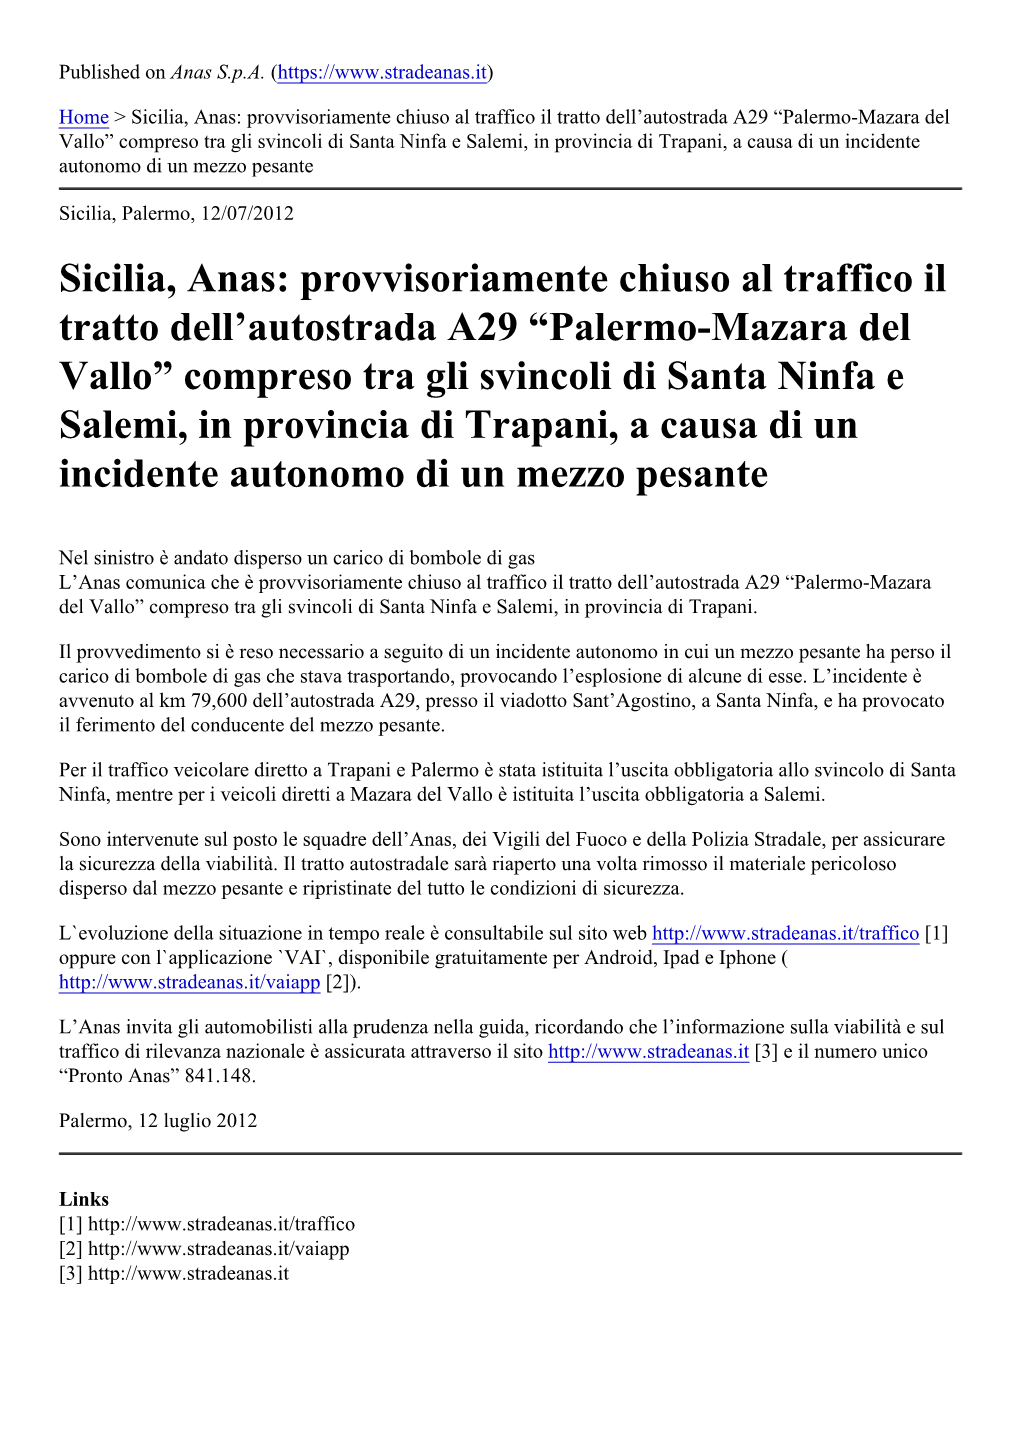 Sicilia, Anas: Provvisoriamente Chiuso Al Traffico Il Tratto Dell™Autostrada